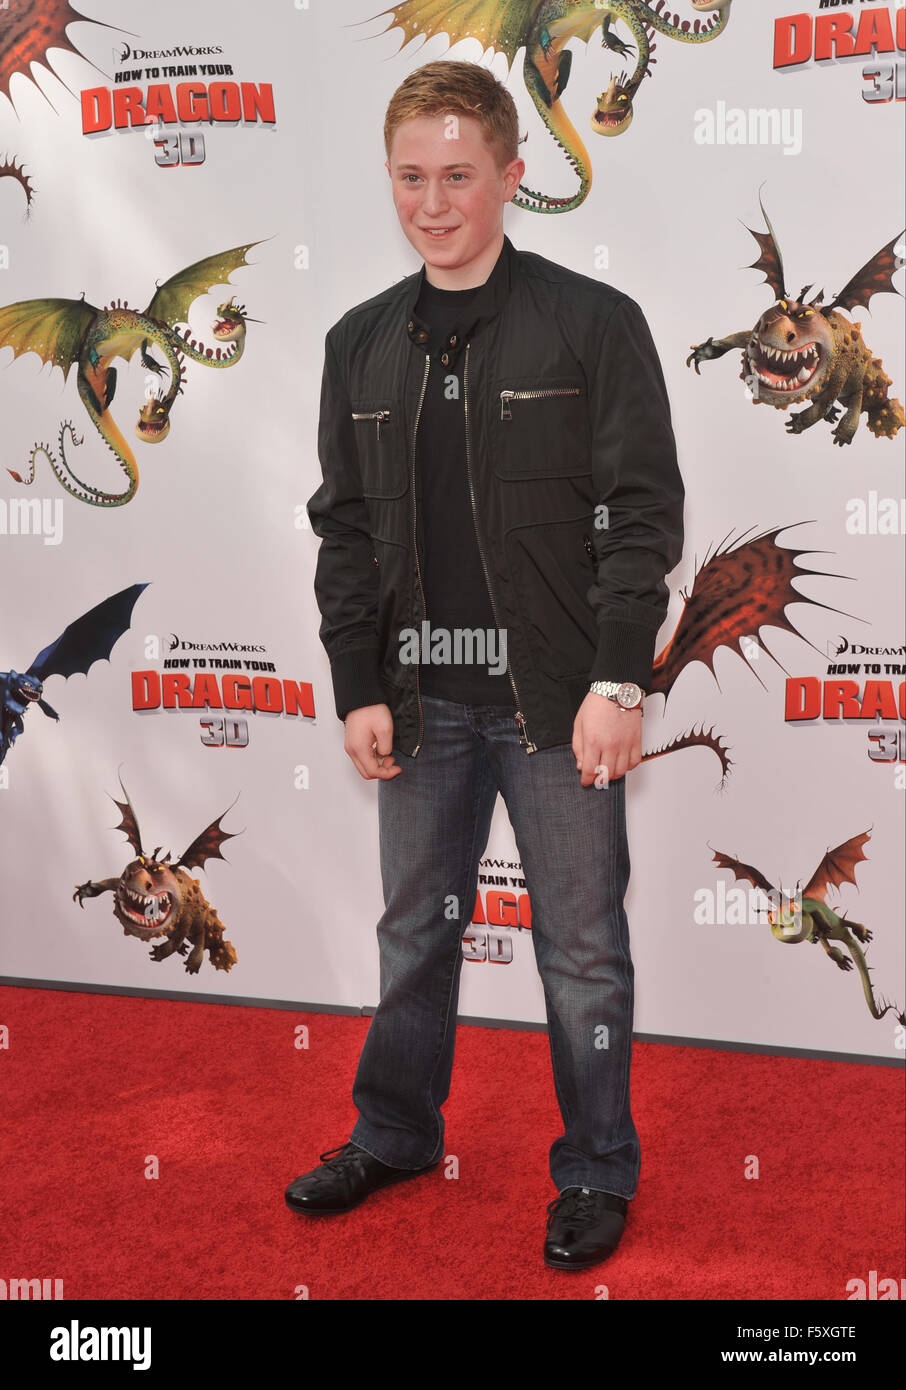 LOS ANGELES, CA - 21. März 2010: Reed Alexander an der Los Angeles premiere von Dreamworks Animation "wie zu Train Your Dragon" Gibson Amphitheatre, Universal Studios, Hollywood. Stockfoto